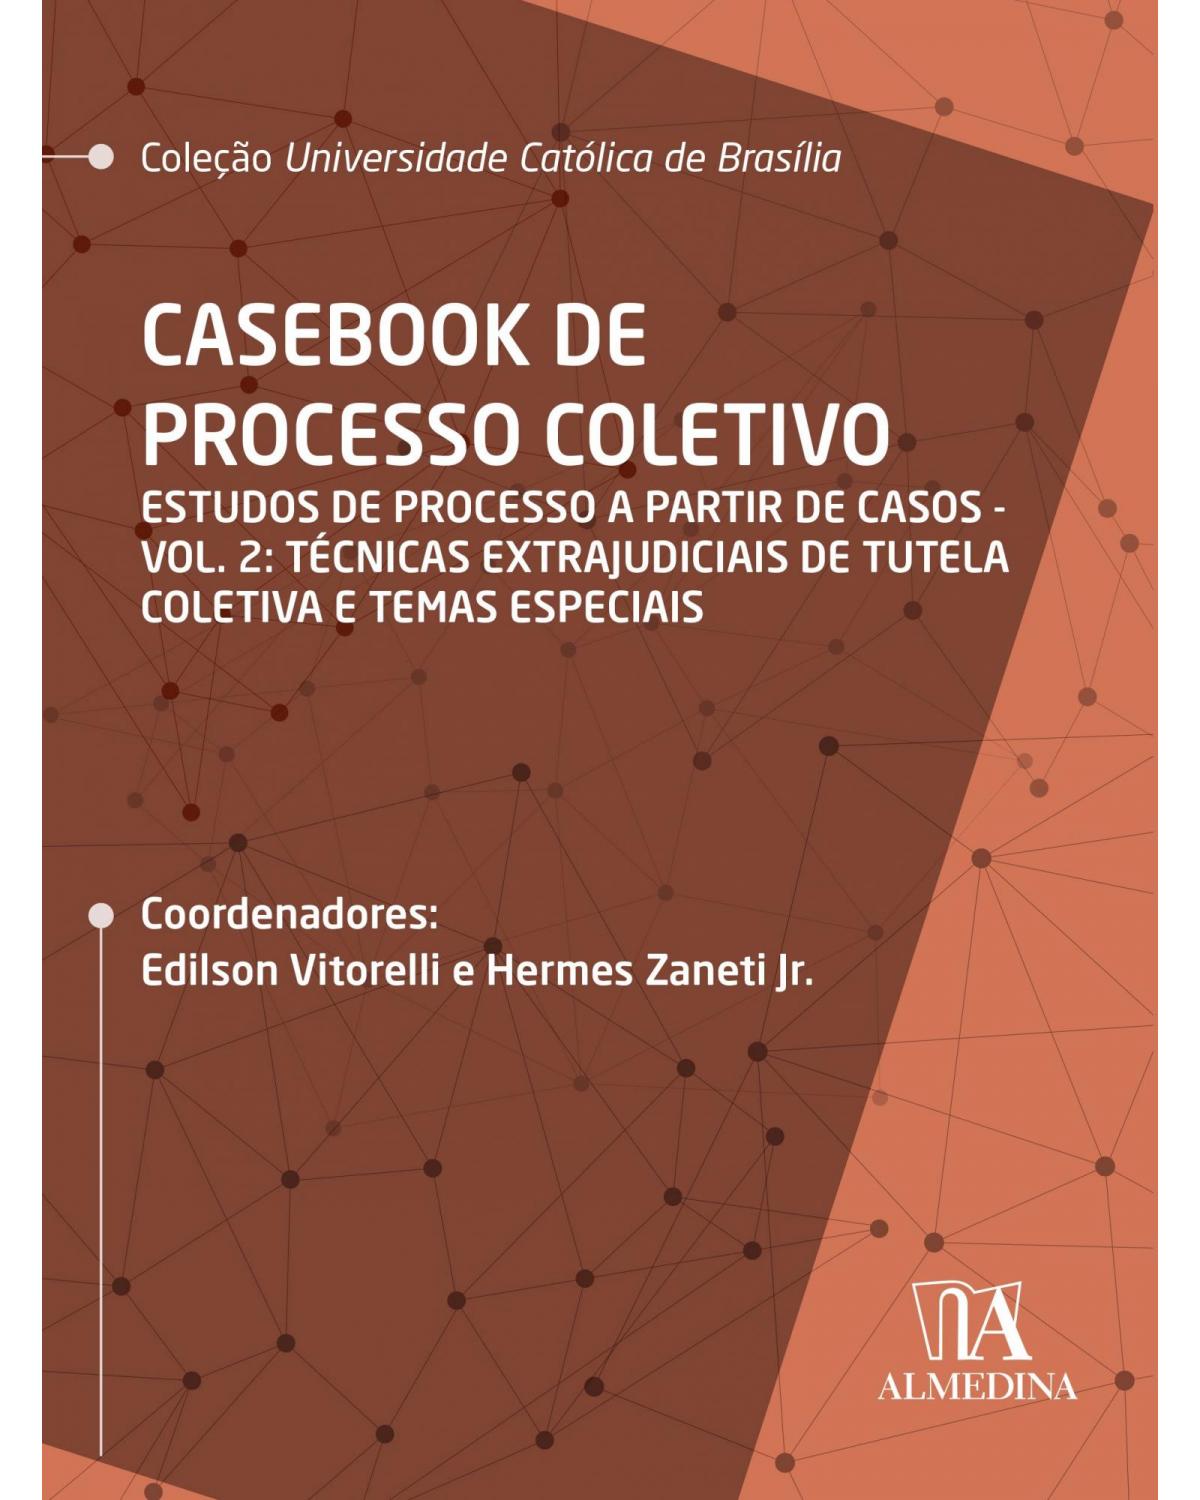 Casebook de processo coletivo - Volume 2: estudos de processo a partir de casos: técnicas extrajudiciais de tutela coletiva e temas especiais - 1ª Edição | 2020